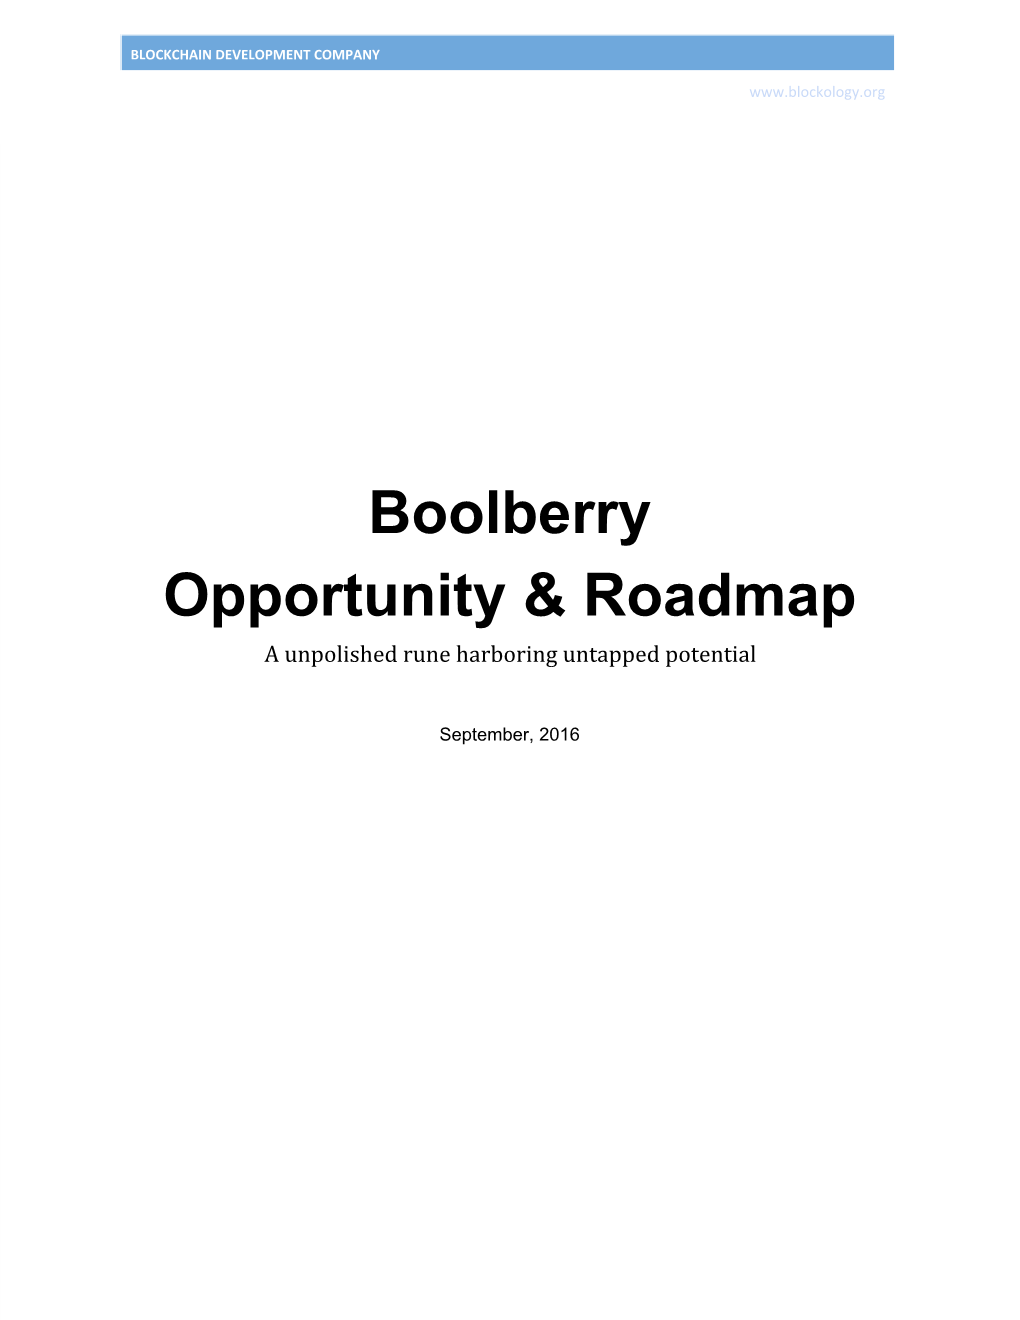 Boolberry Opportunity & Roadmap